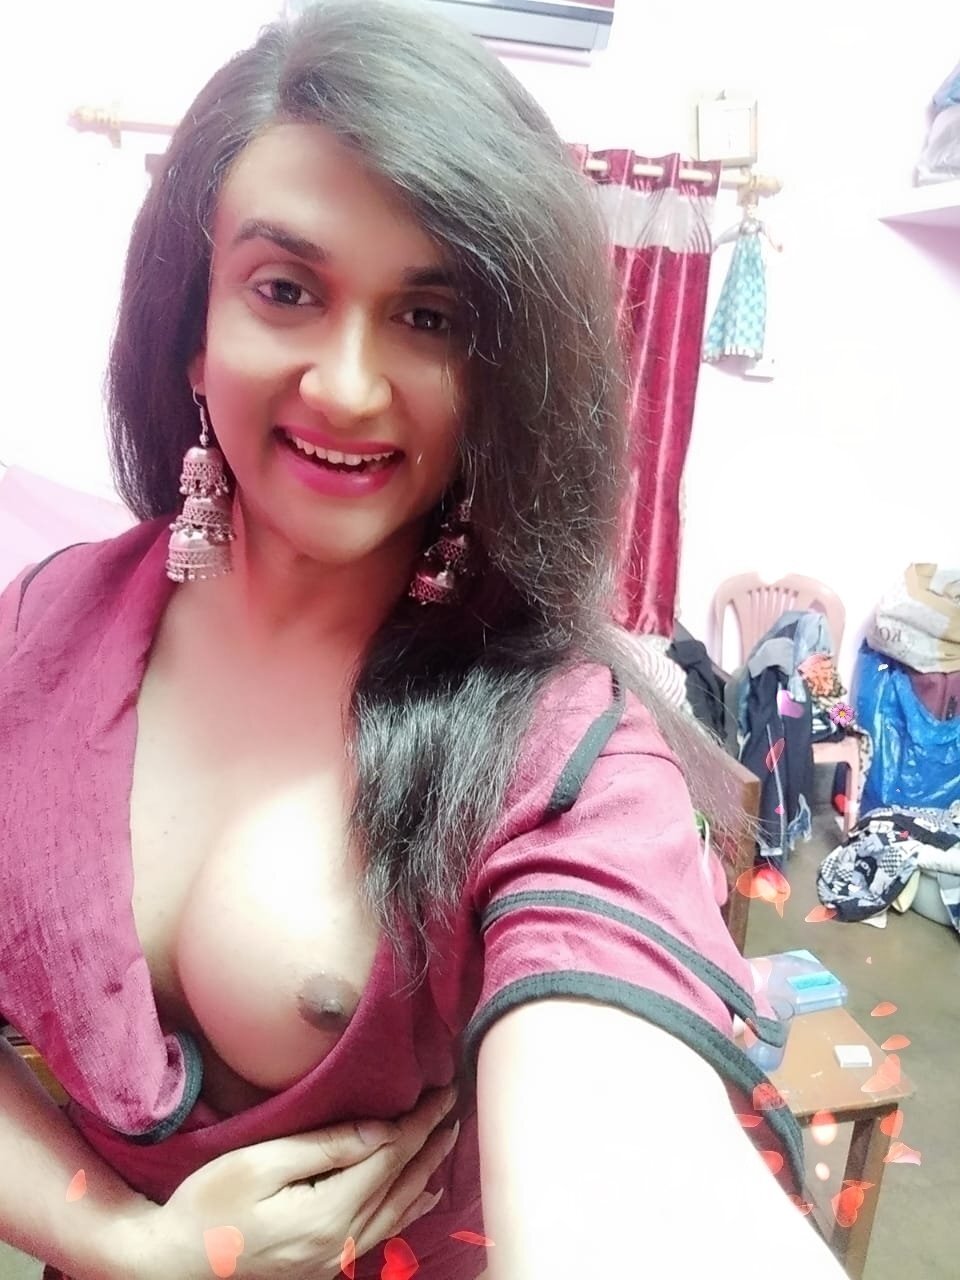 Shemale Desi Porn - Desi Indian shemale 4 - Porn Videos & Photos - EroMe